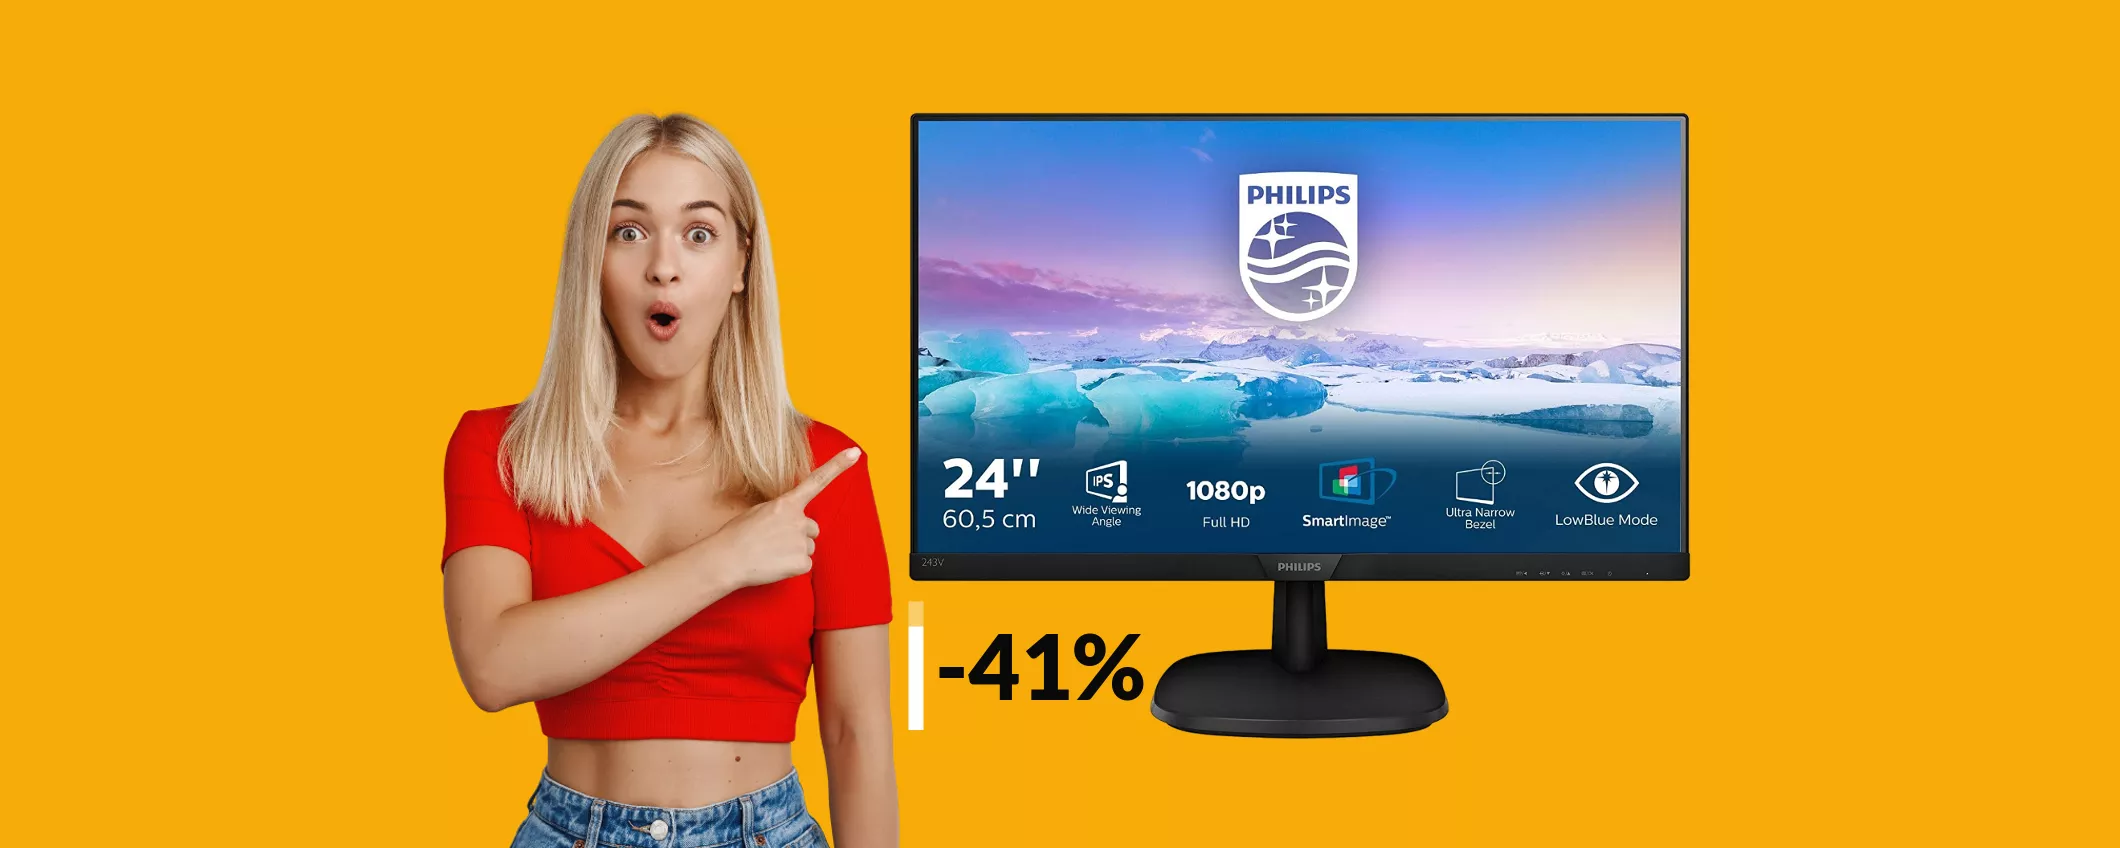 Monitor Philips FullHD 24 pollici a soli 99€: oggi fai un FURTO